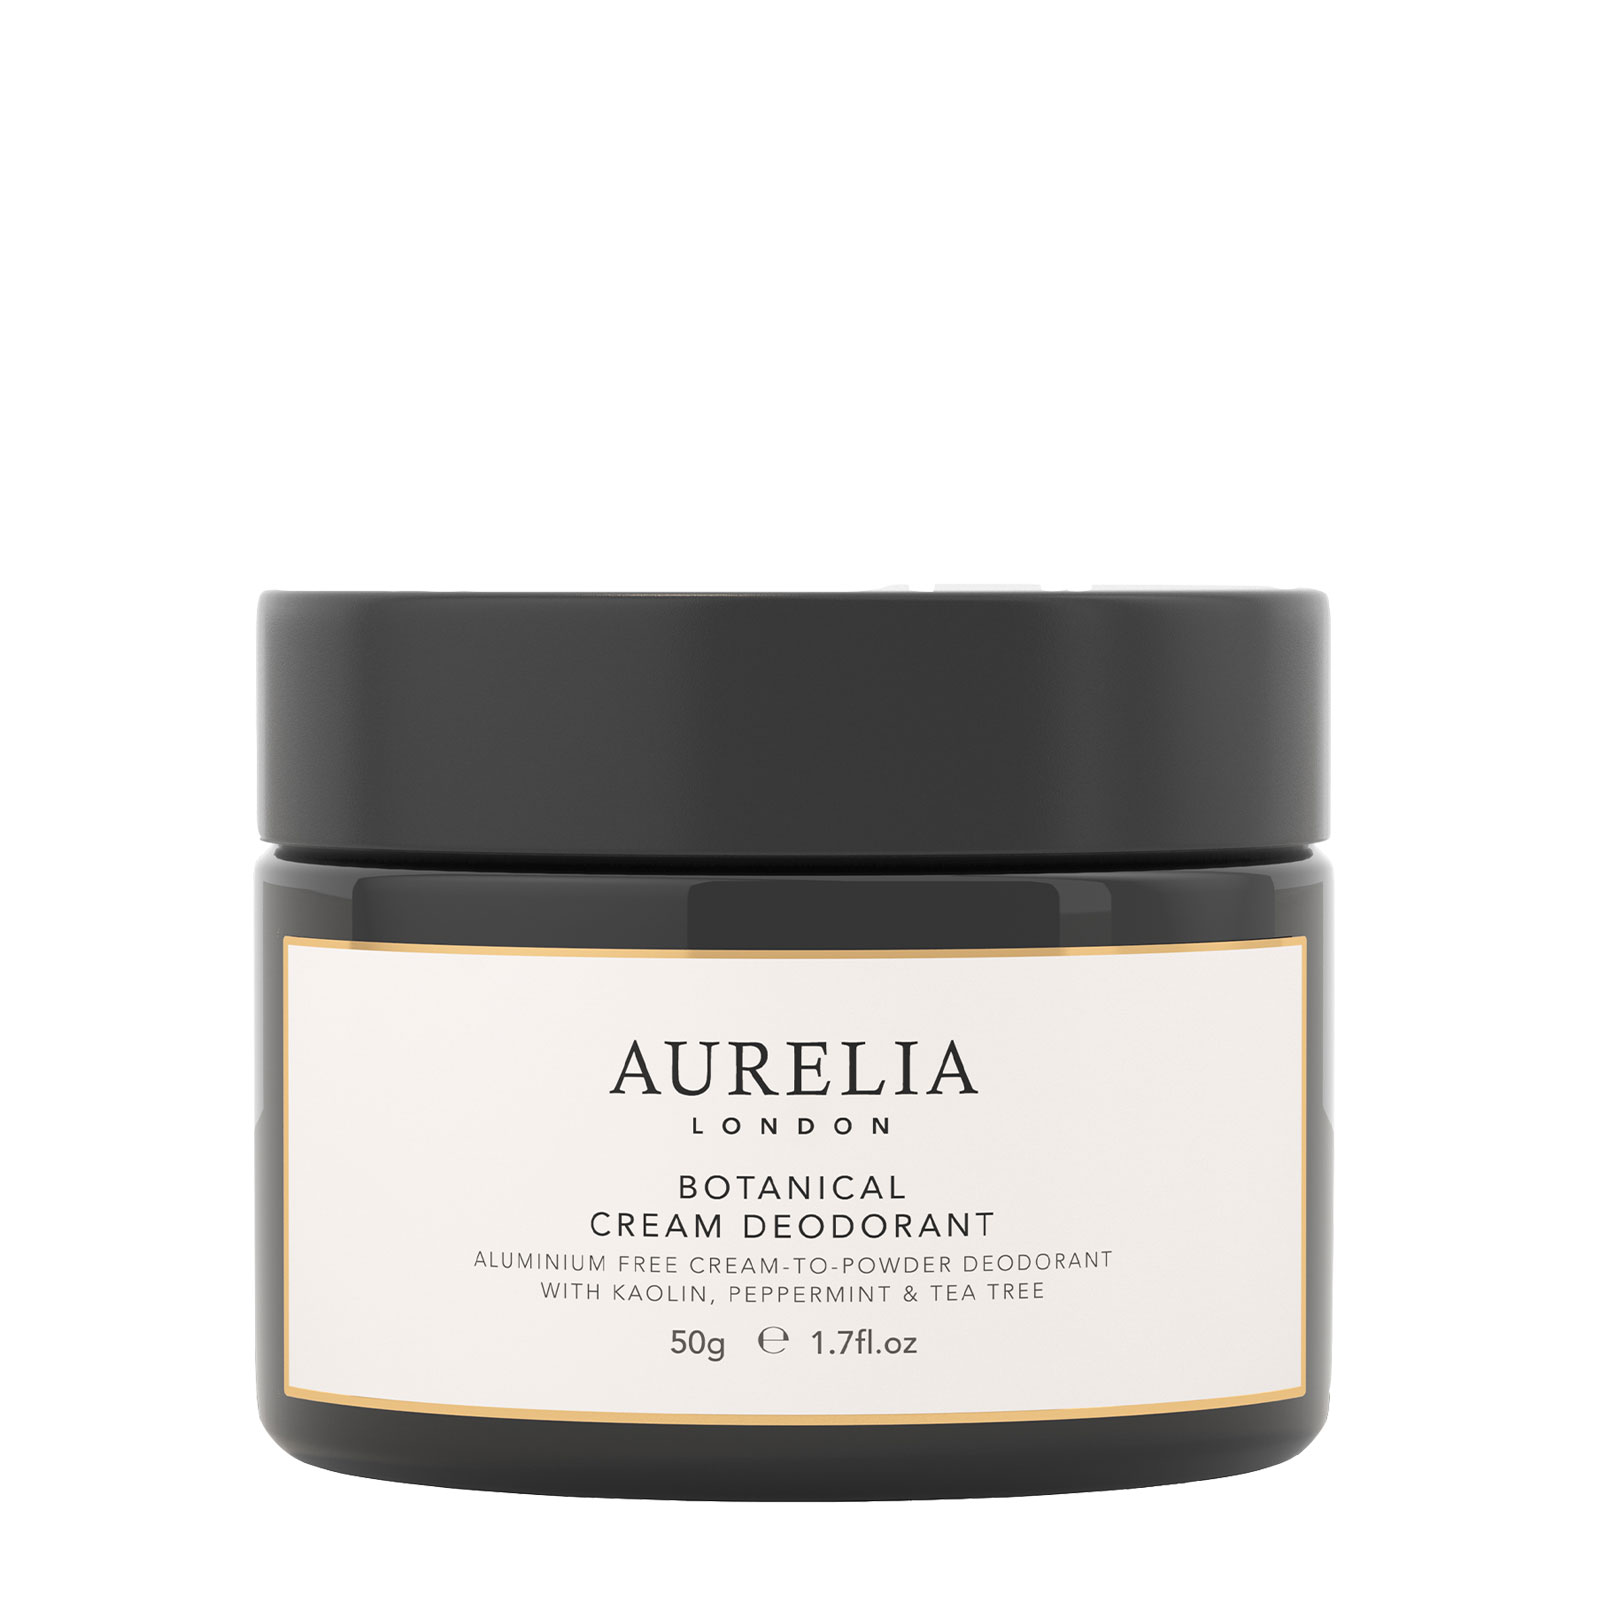 Aurelia London Botanical Cream Deodorant Natural Aluminium Free 50G